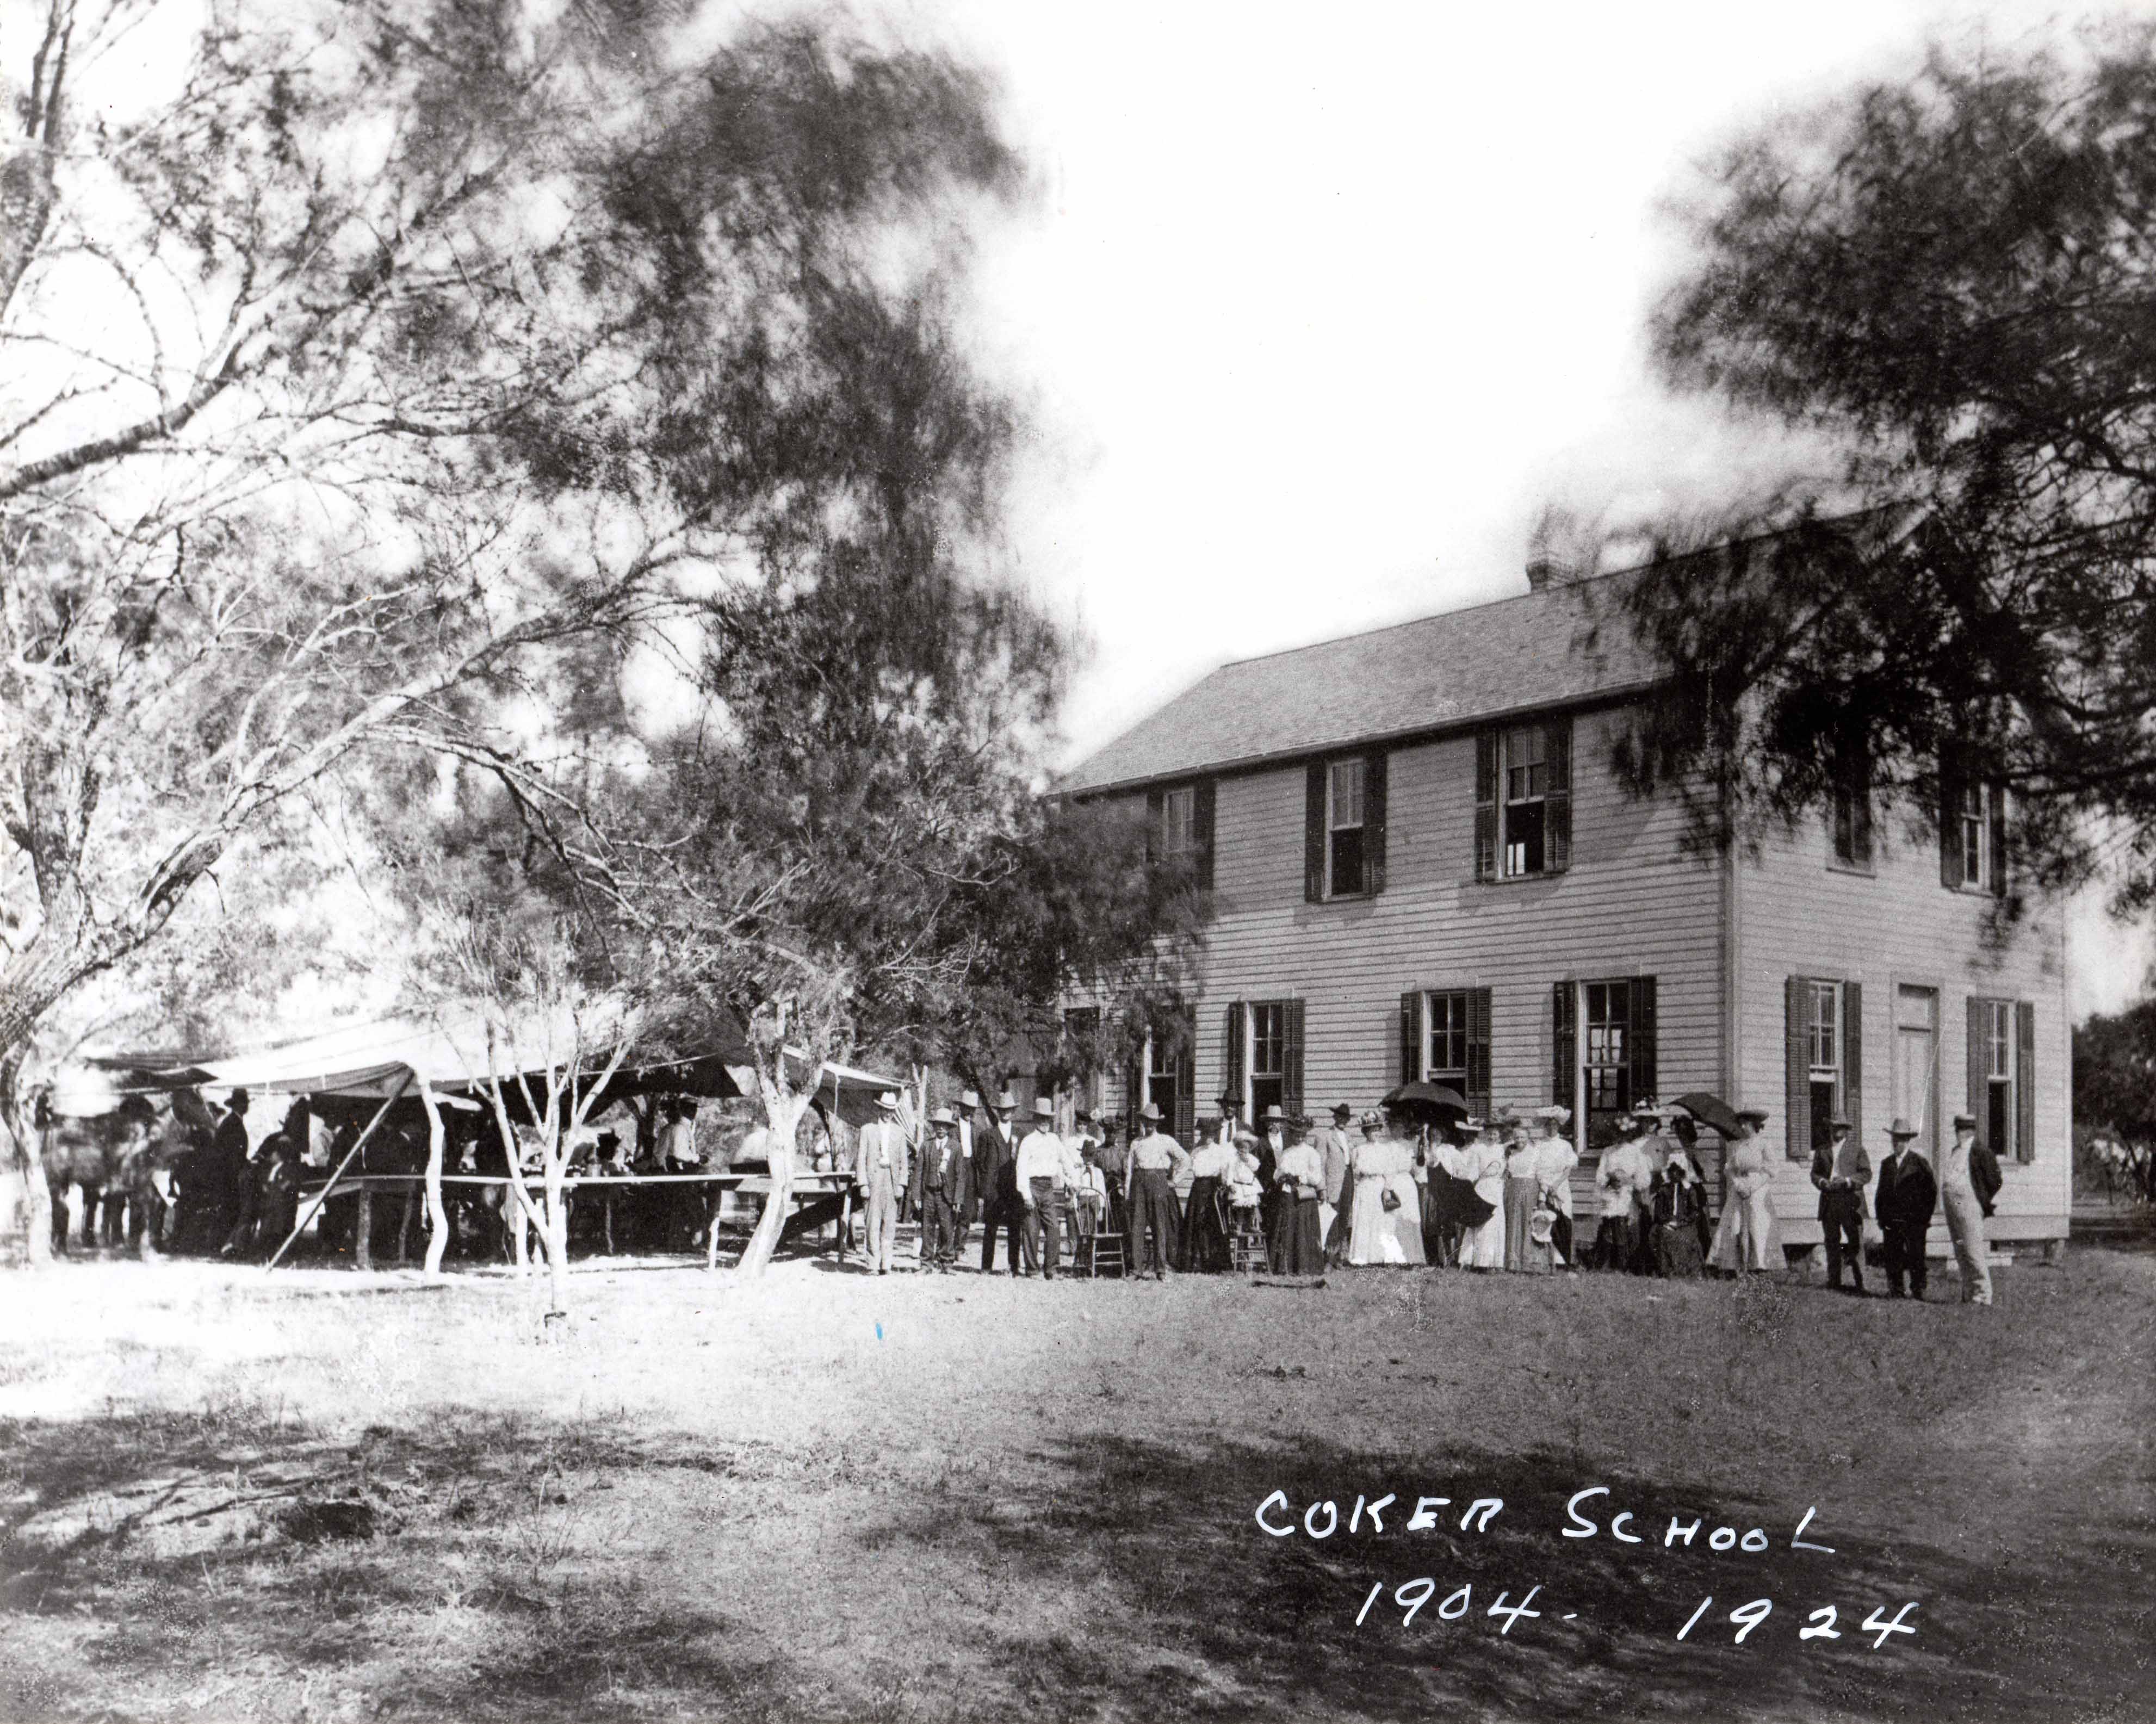 Coker School - 1904 - 1924